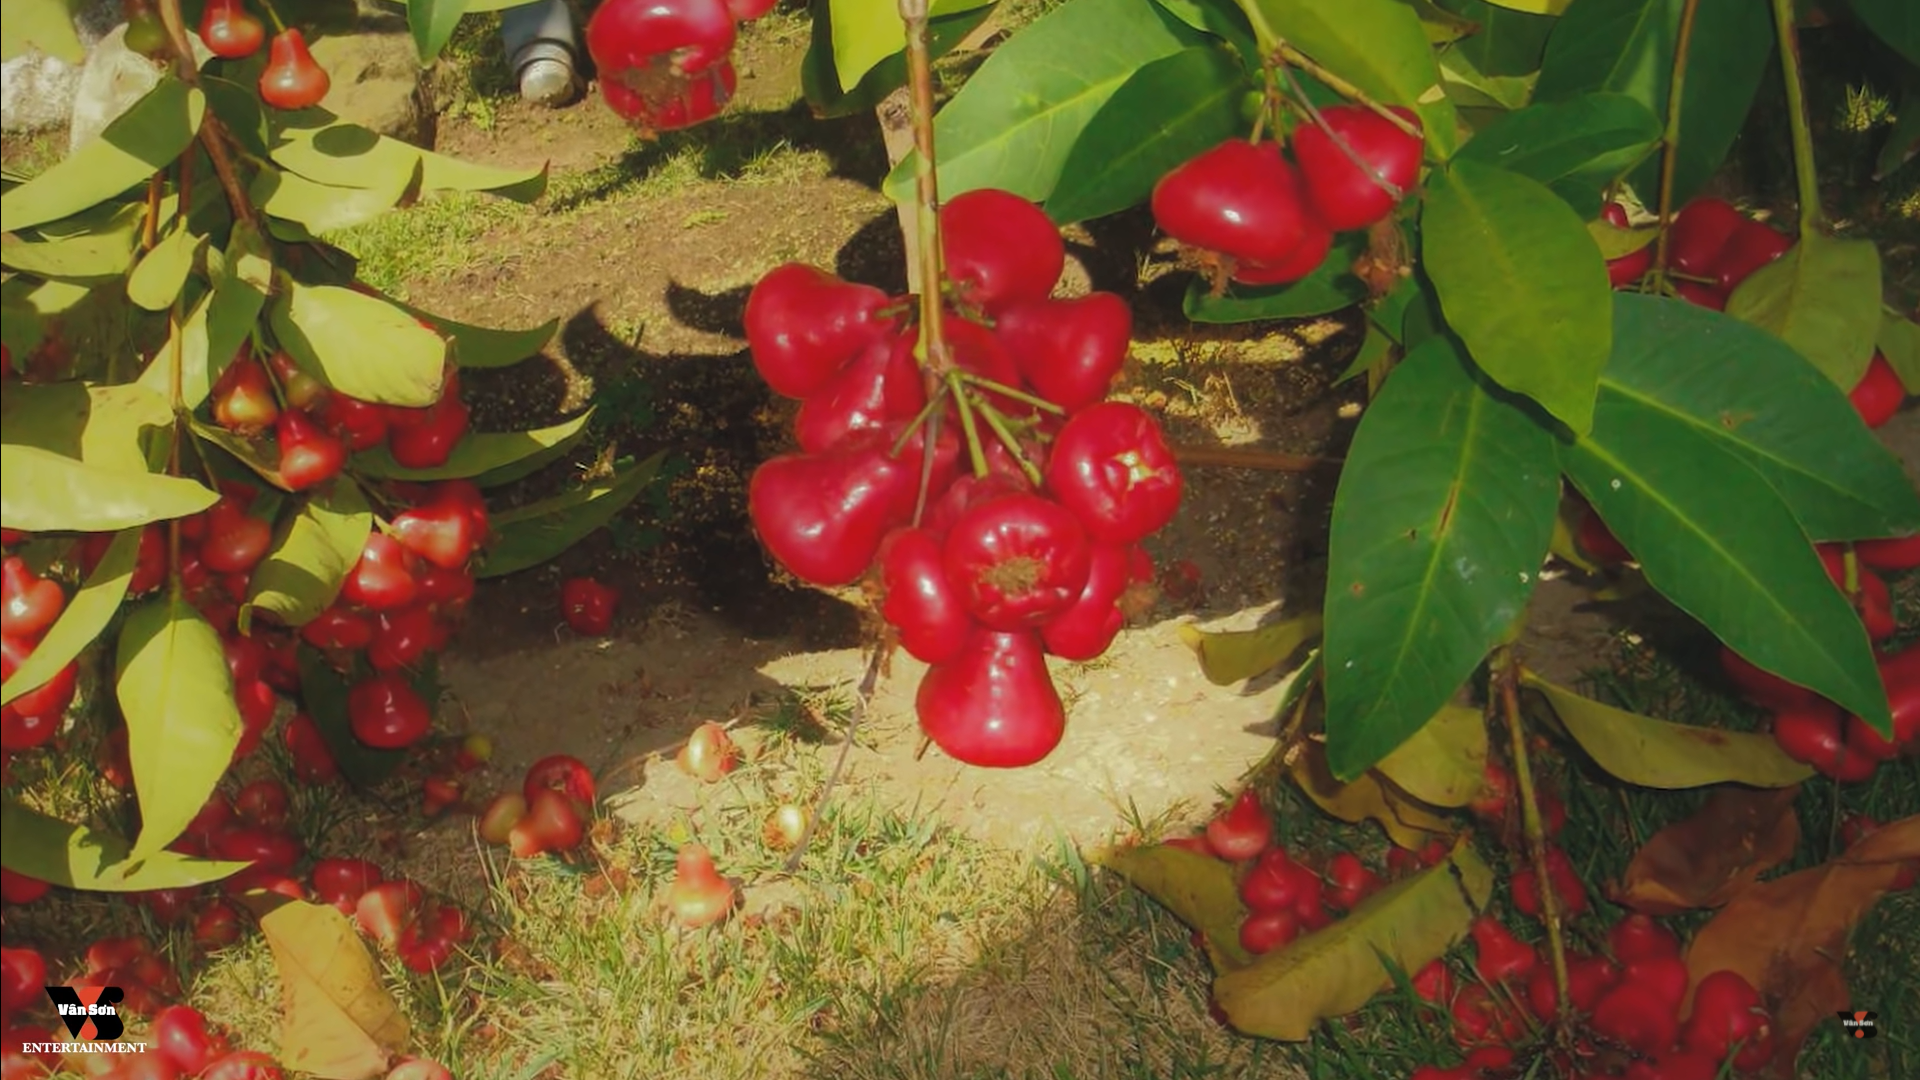 Danh hài Vân Sơn khoe vườn cây hàng trăm mét vuông, trĩu quả trong biệt thự tại Mỹ - Ảnh 6.